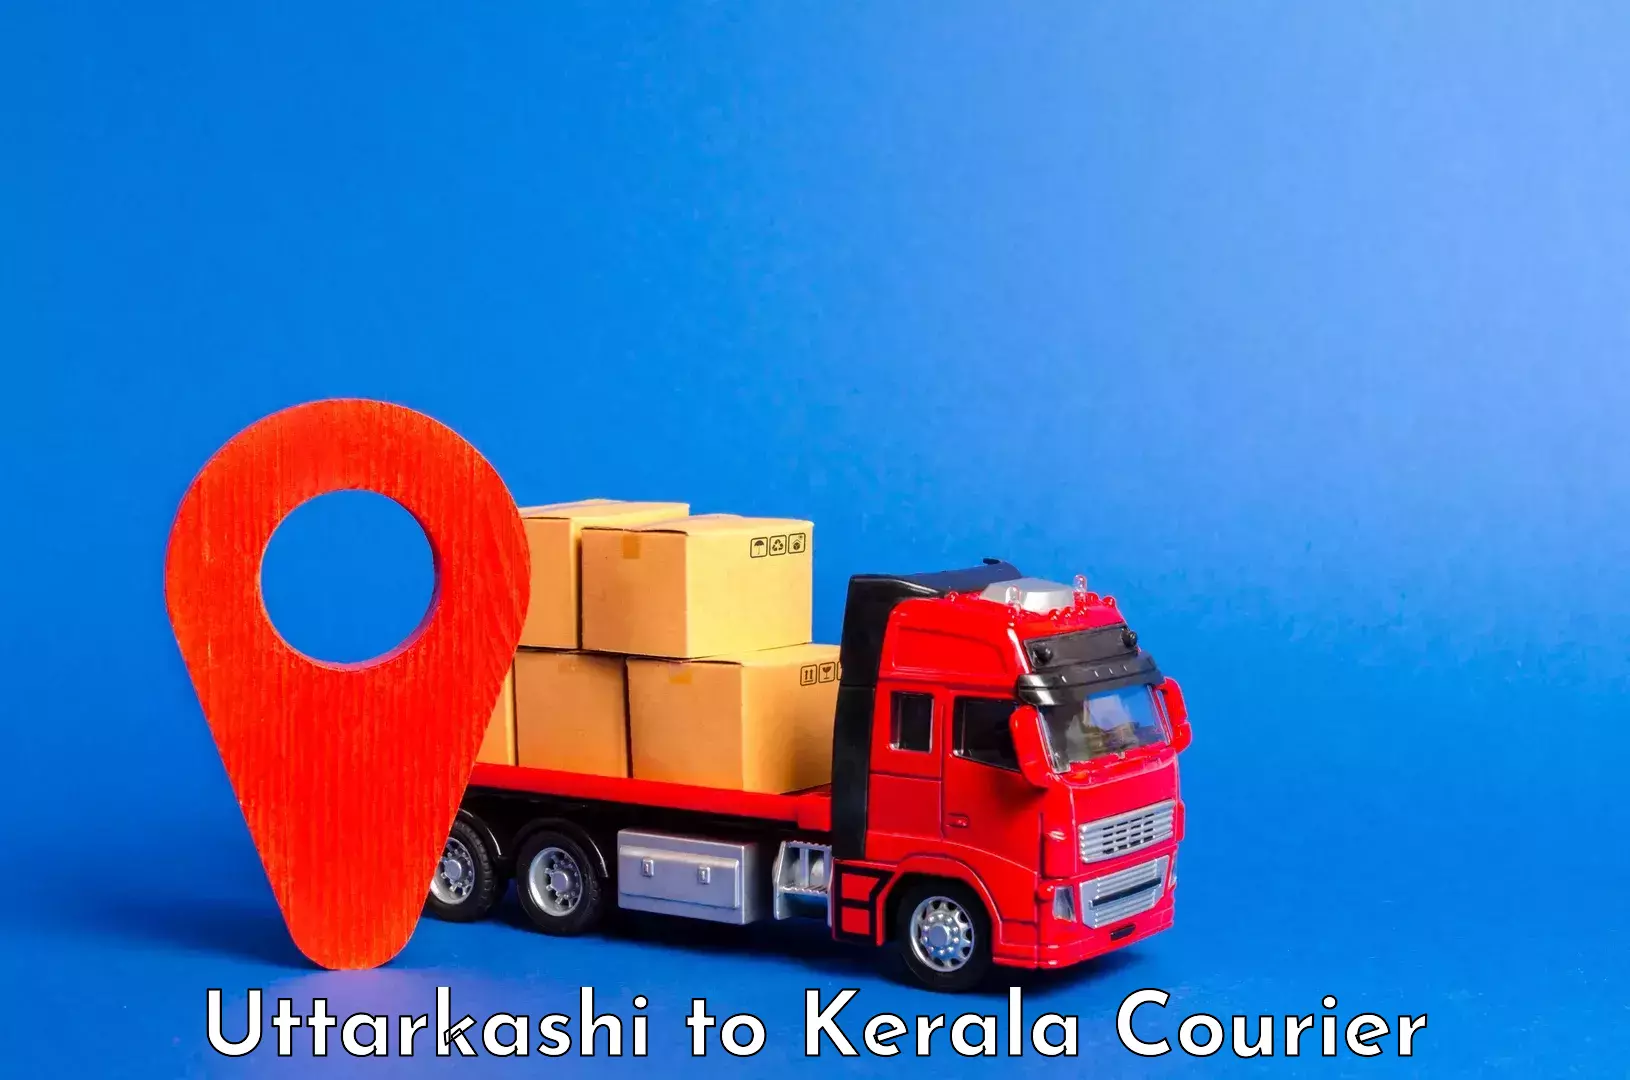 Luggage shipping specialists Uttarkashi to Kerala